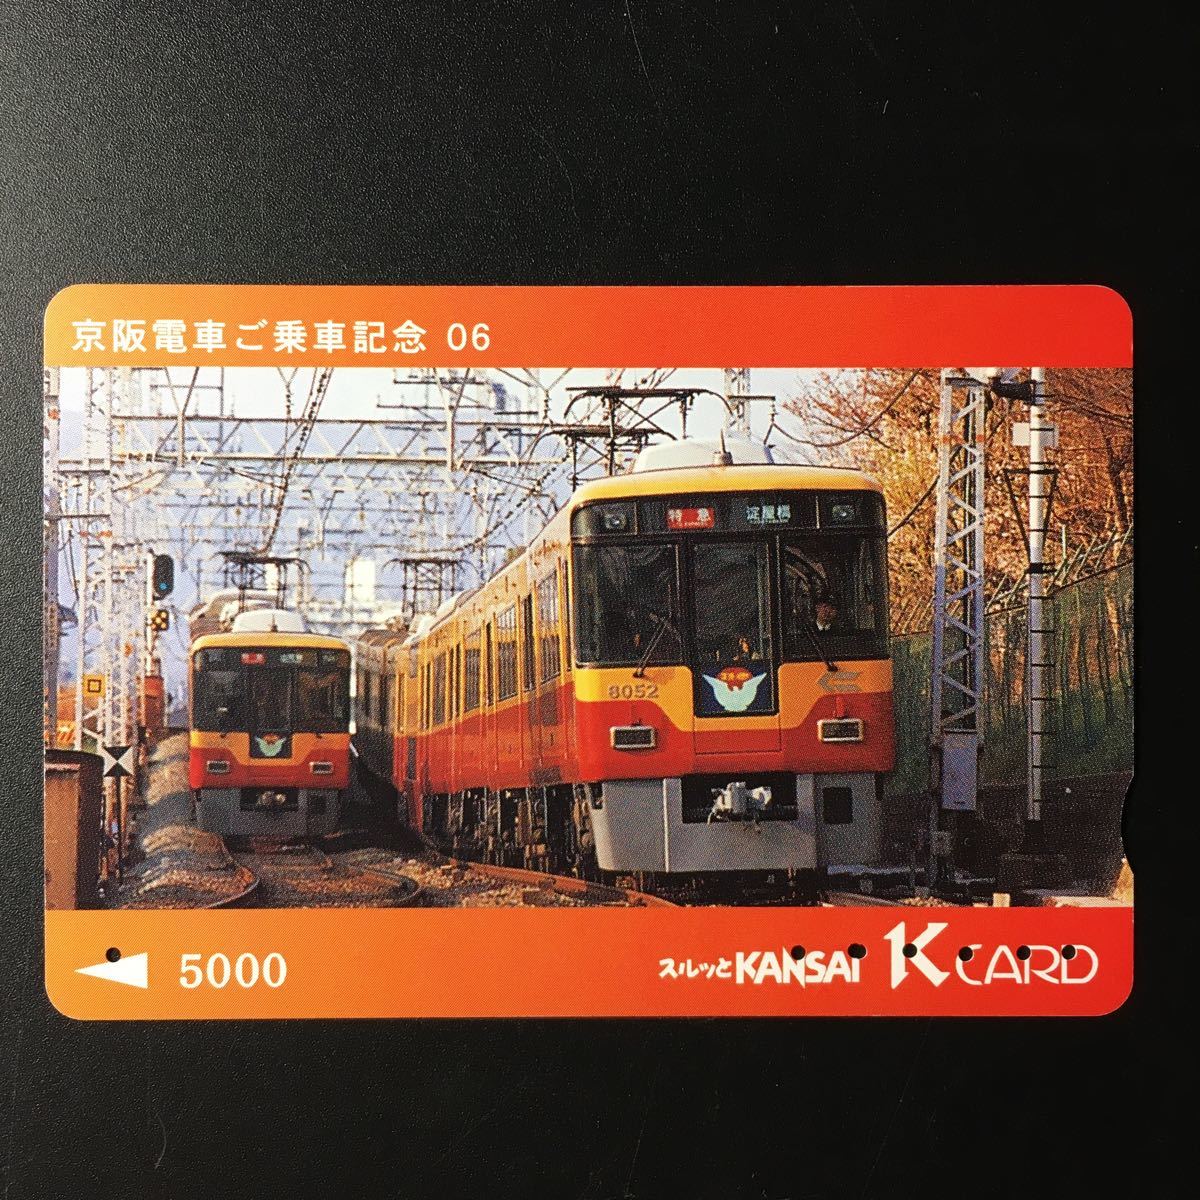 京阪/シリーズカードー京阪電車ご乗車記念シリーズ6「8000系」ー2005年発売ー京阪スルッとKANSAI Kカード(使用済)_画像1